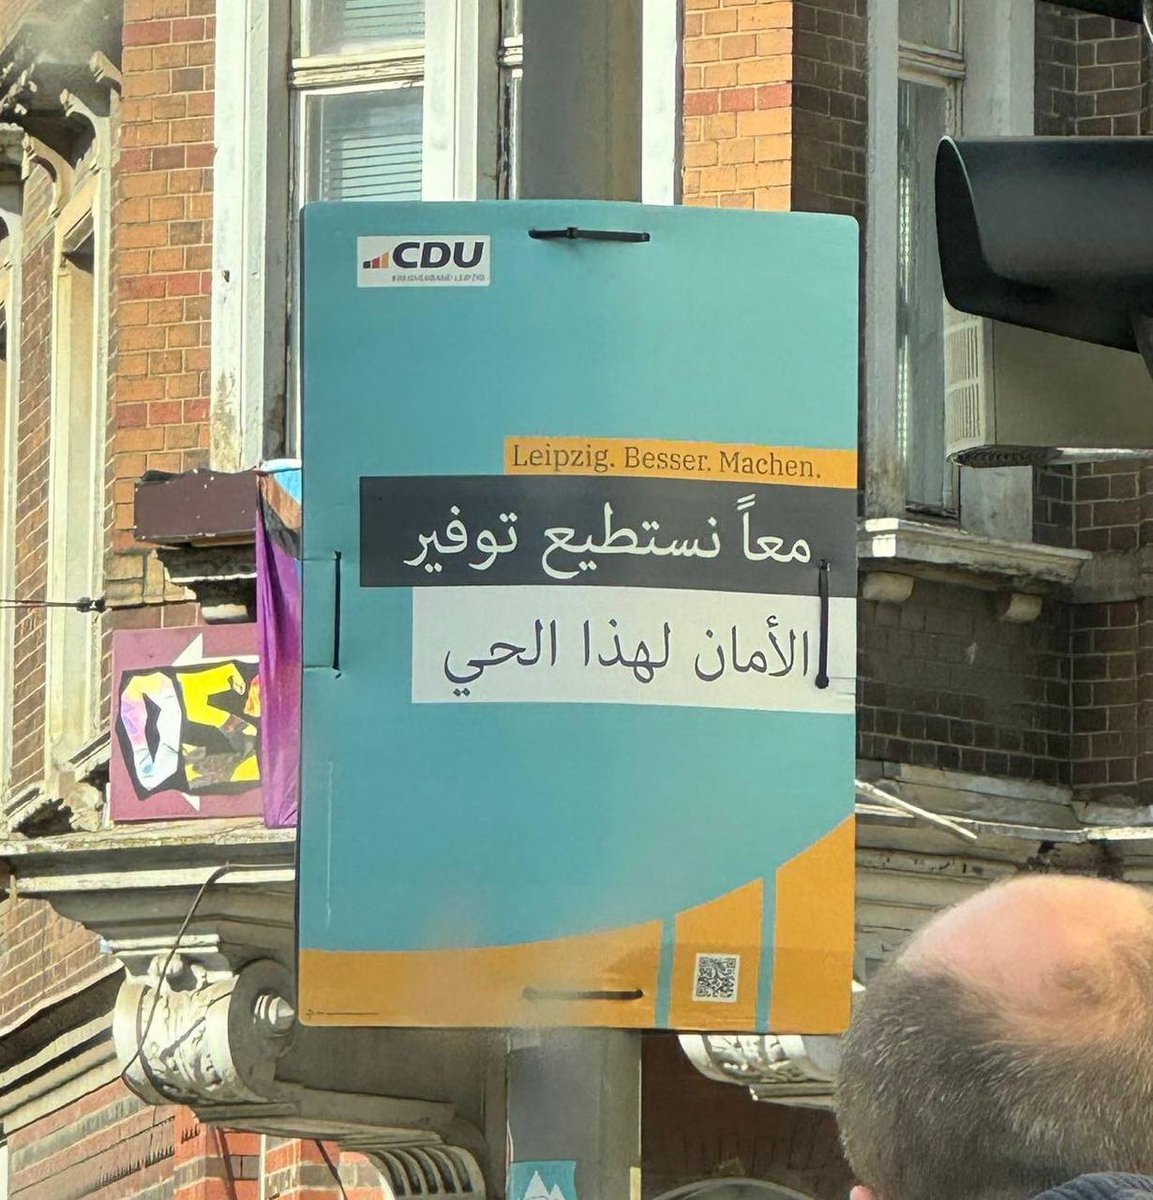 Rund 400 Wahlplakate in arabischer Sprache zerstört und gestohlen ❗

In #Leipzig sind am Wochenende rund 400 Wahlplakate der #CDU zerstört und gestohlen worden. Das teilte der Kreisverband der Christdemokraten am Montagabend mit. Die Polizei bestätigte den Sachverhalt auf…